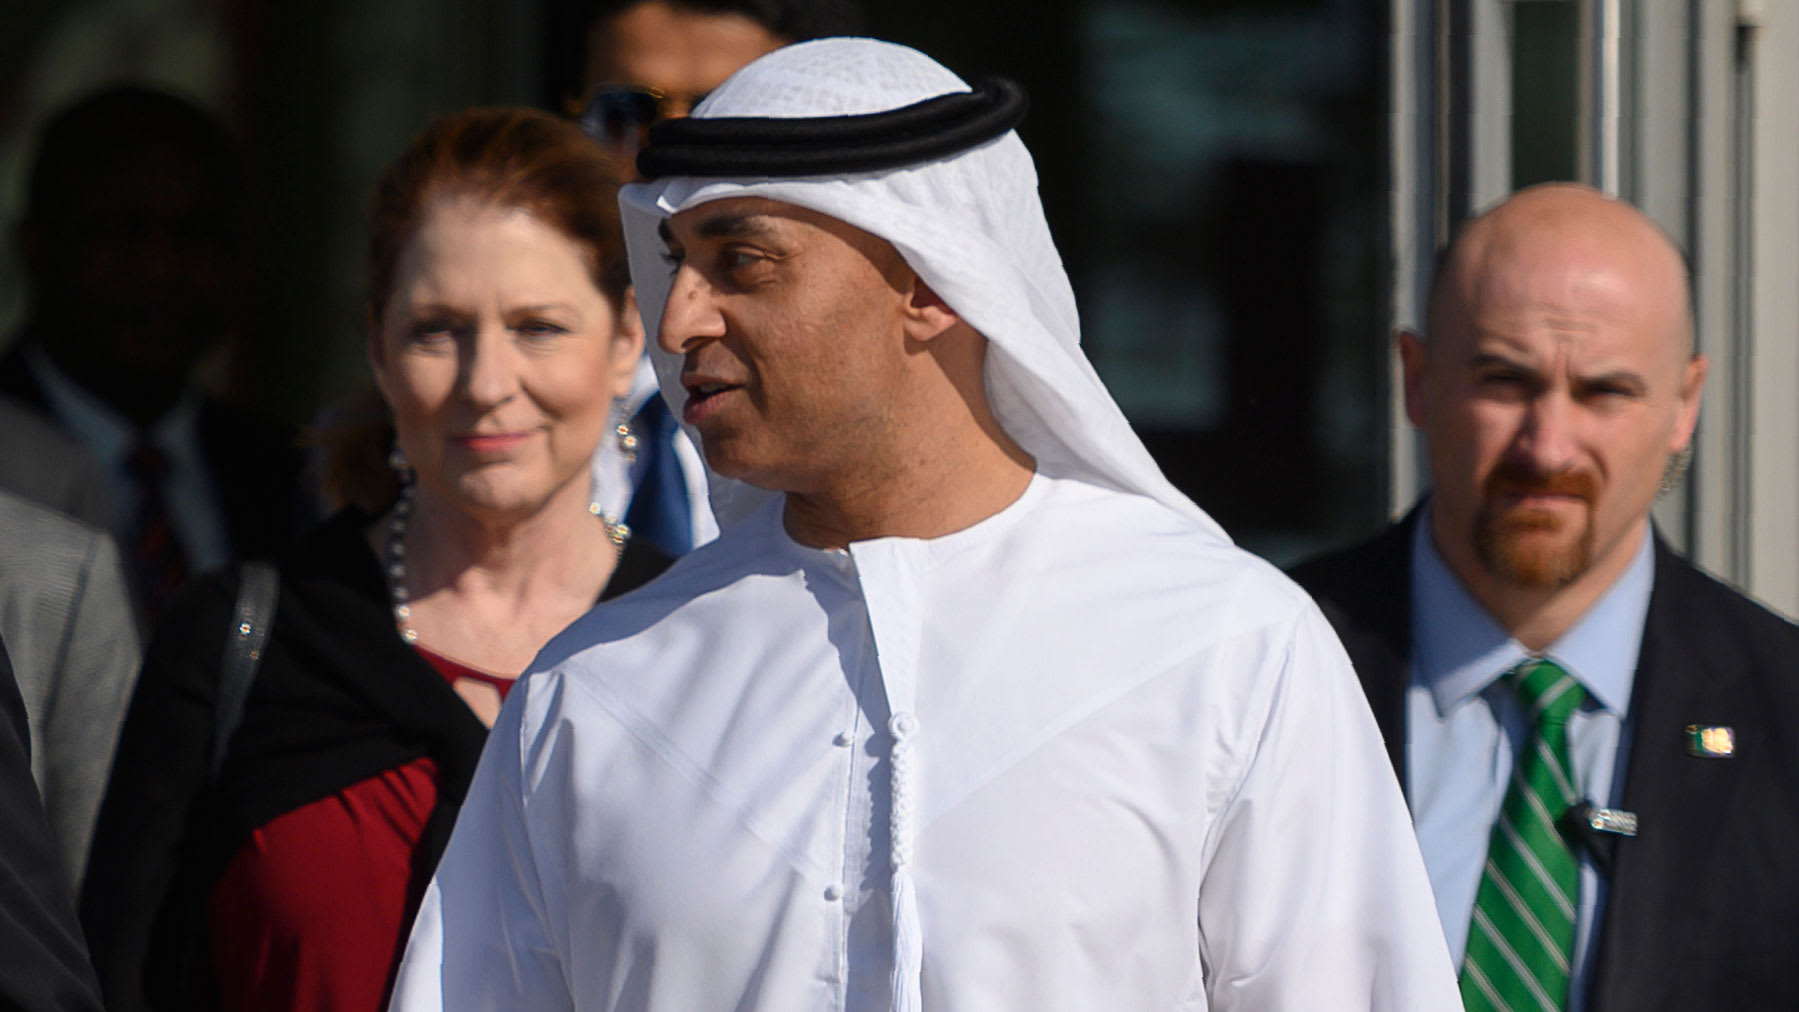 سفير الإمارات بأمريكا يوسف العتيبة يثير تفاعلا بتصريحات بذكرى الاتفاقية الإبراهيمية